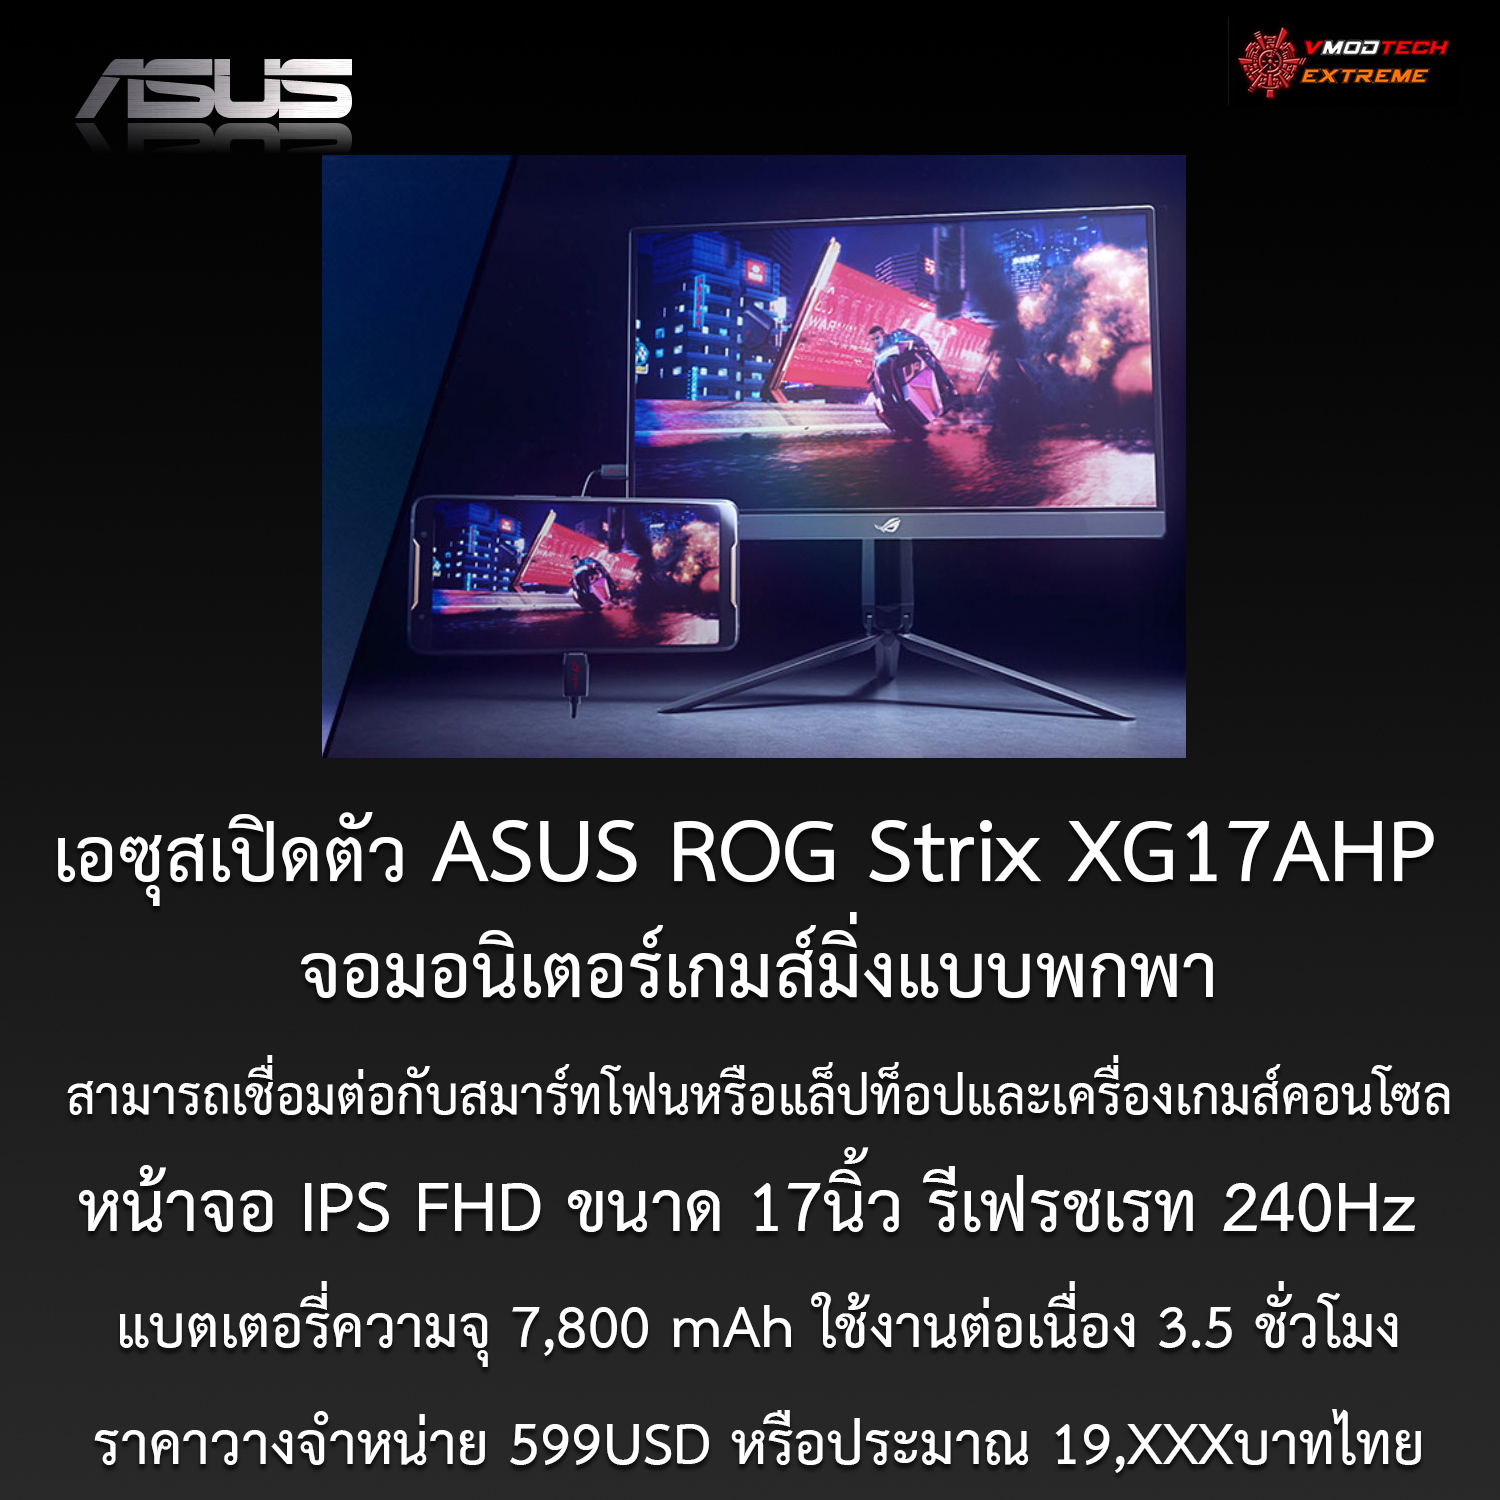 เอซุสเปิดตัว ASUS ROG Strix XG17AHP จอมอนิเตอร์เกมส์มิ่งแบบพกพาด้วยสเปกหน้าจอ IPS FHD ขนาด 17นิ้ว 240Hz สามารถเชื่อมต่อกับสมาร์ทโฟนหรือแล็ปท็อปและเครื่องเกมส์คอนโซล